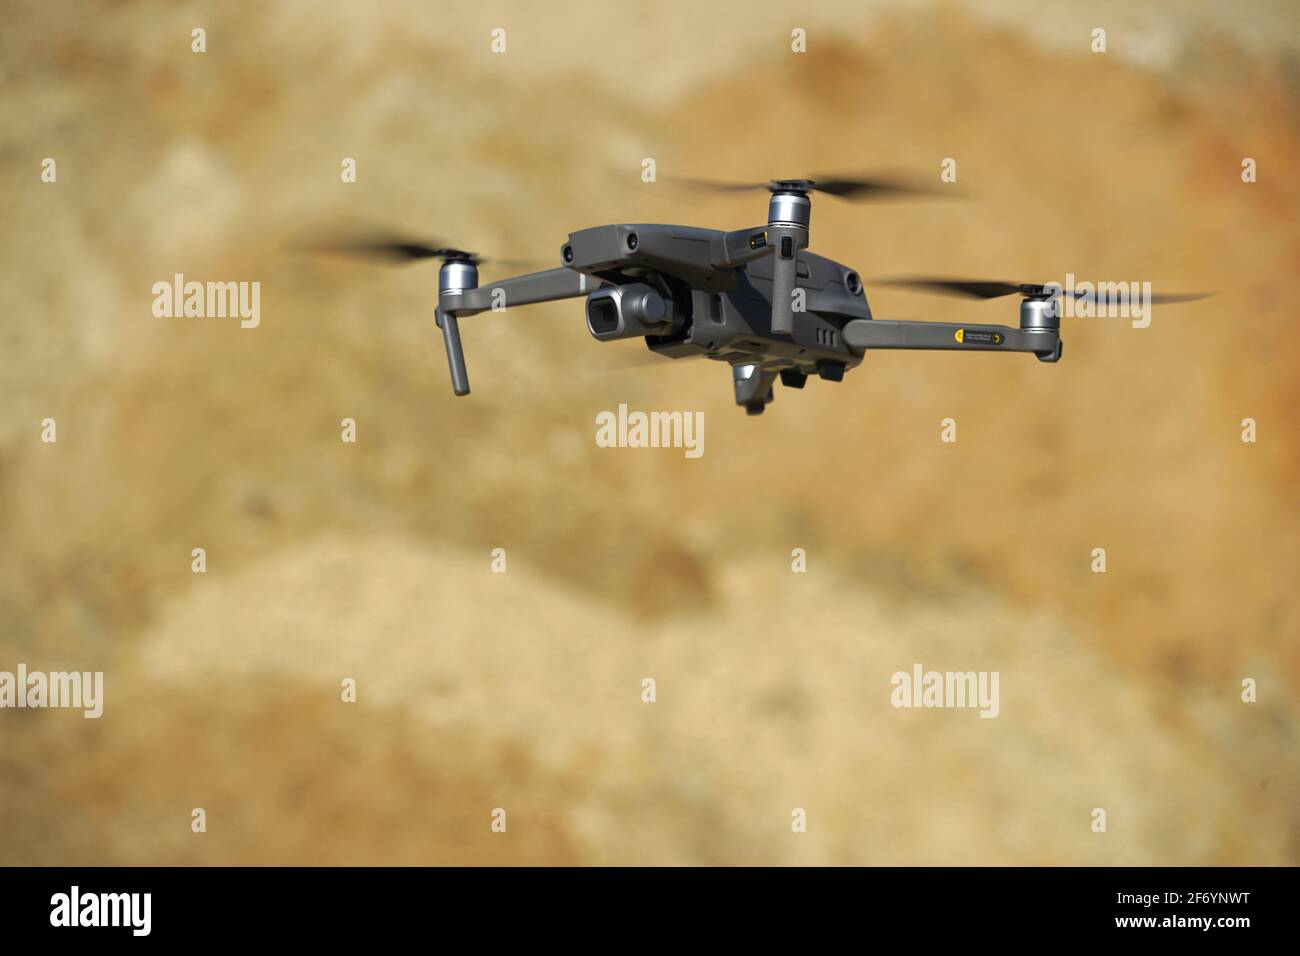 Drone multicopter planant avant une dune de sable dans la lumière du soleil Banque D'Images